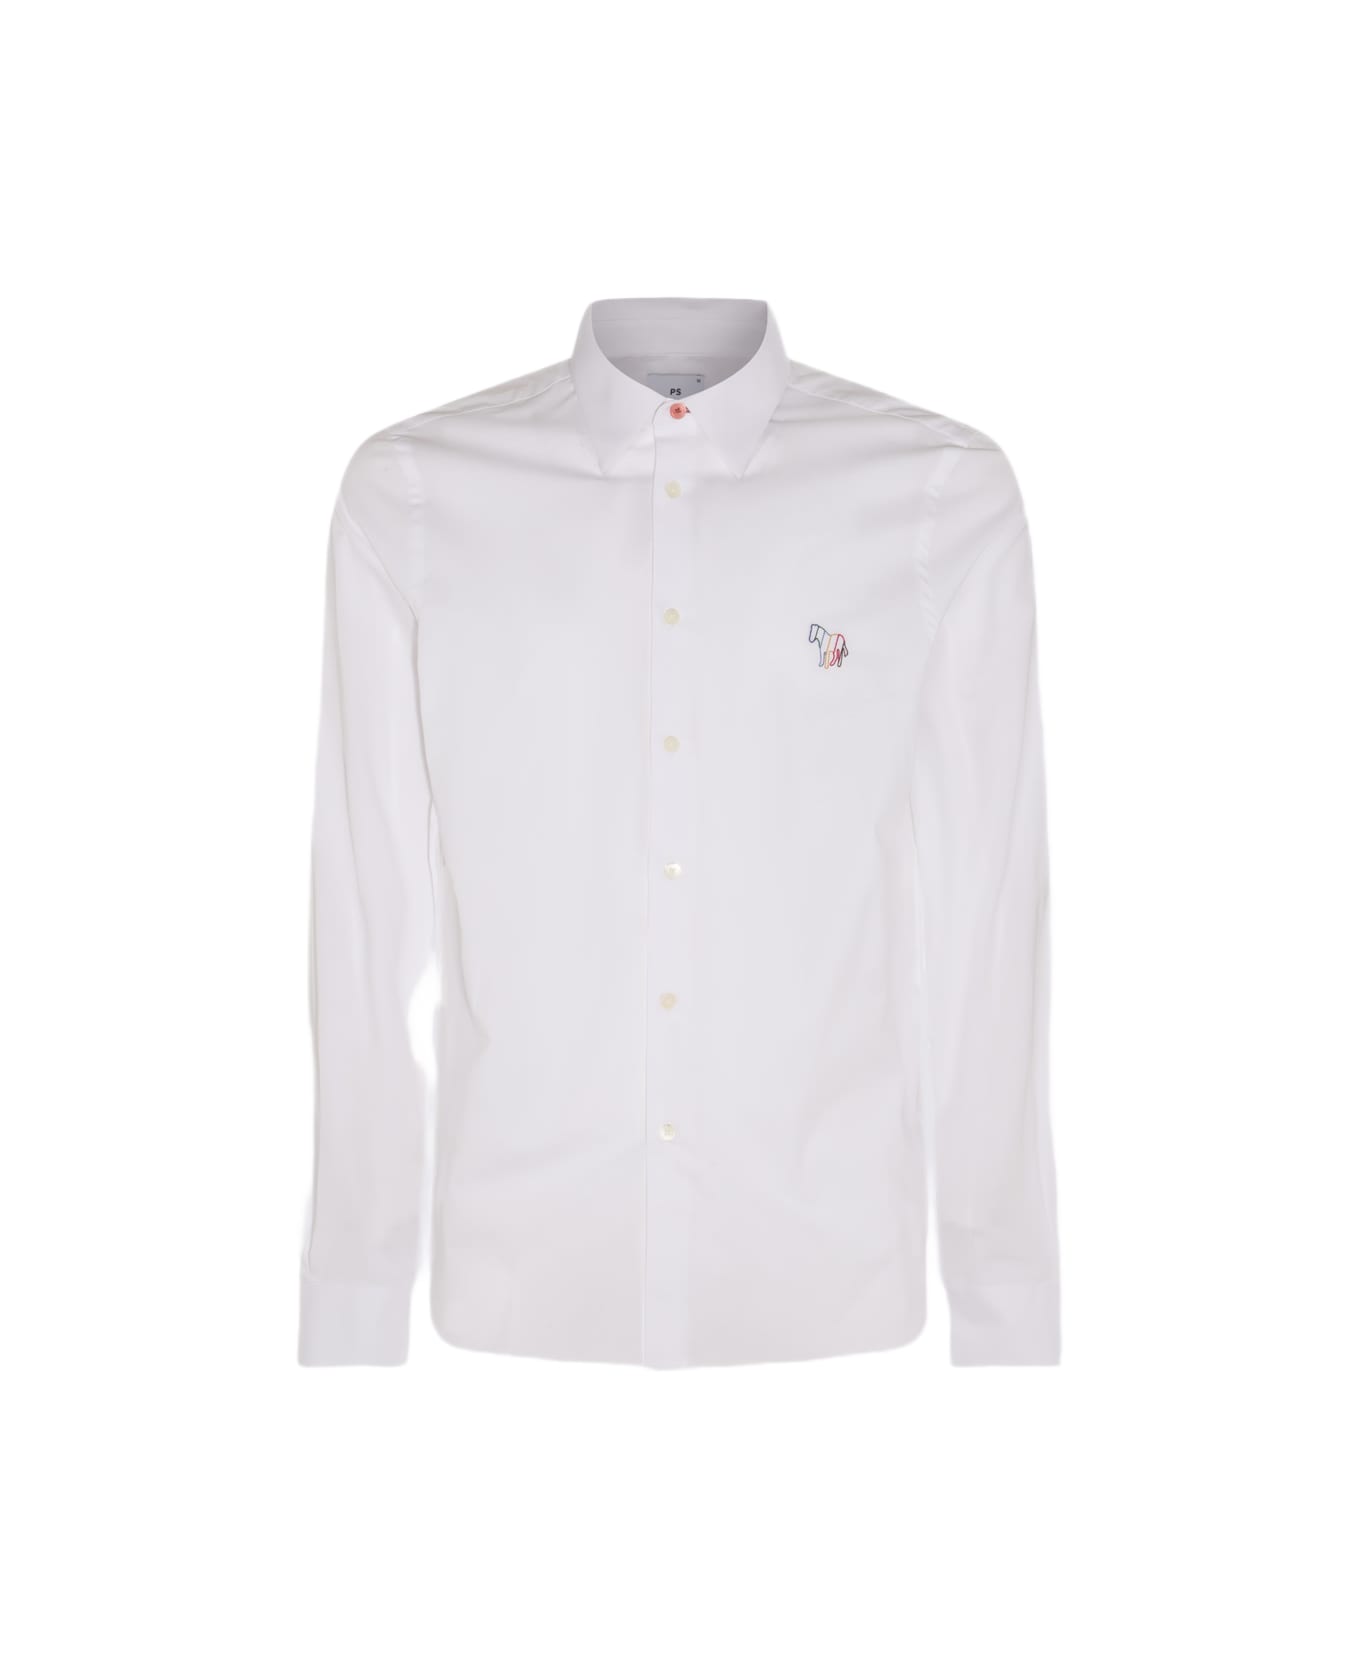 Paul Smith White Cotton Shirt - White